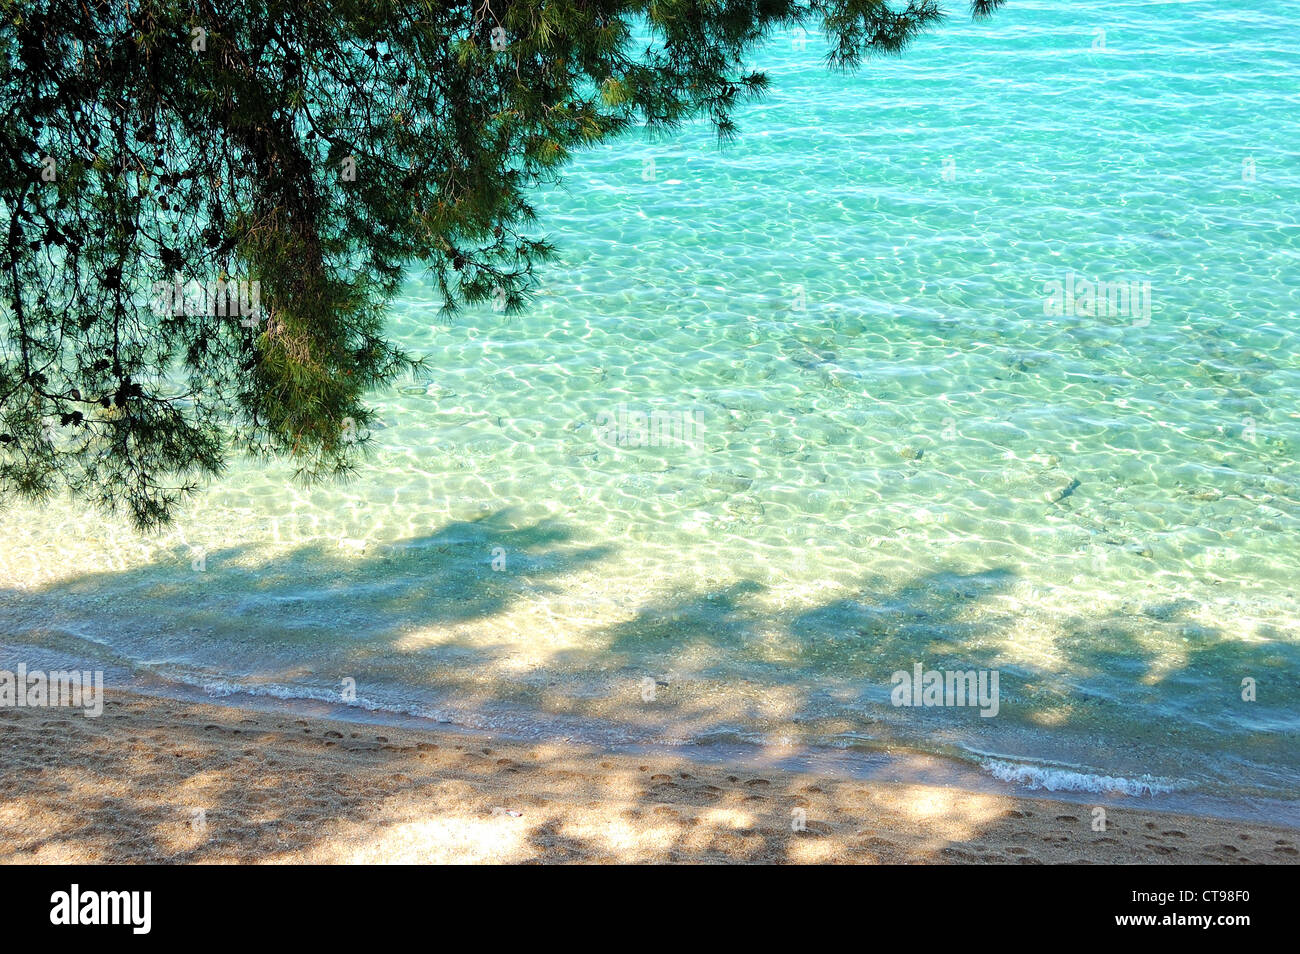 Plage et l'eau turquoise de la mer Egée, Halkidiki, Grèce Banque D'Images